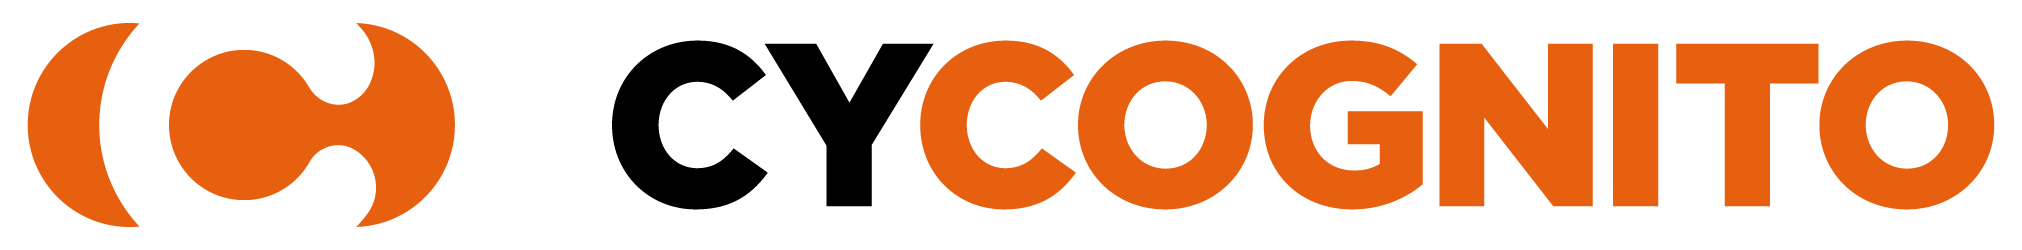 CyCognito_Logo Light